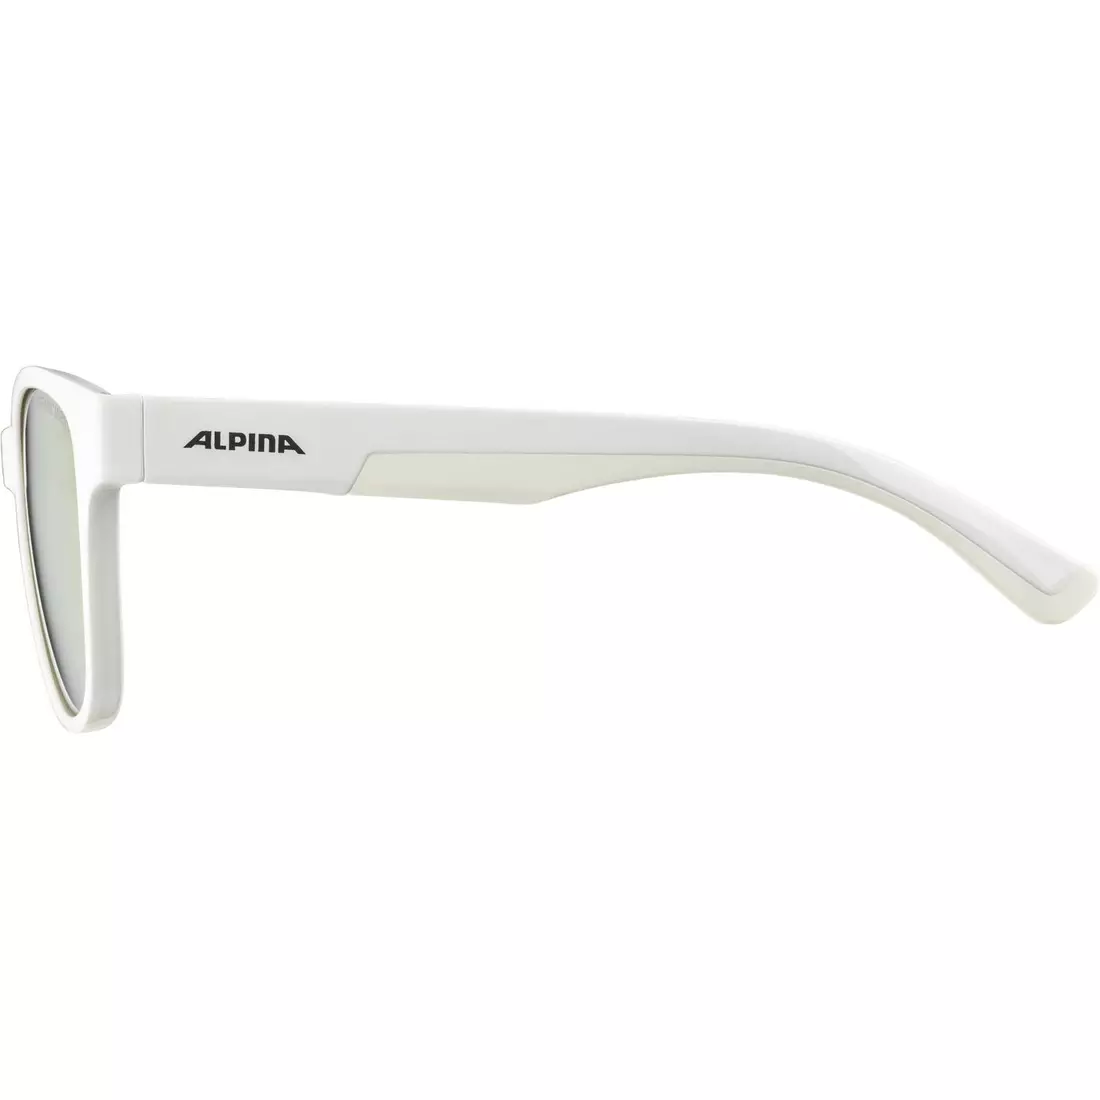 ALPINA FLEXXY COOL KIDS II detské cyklistické/športové okuliare, white gloss